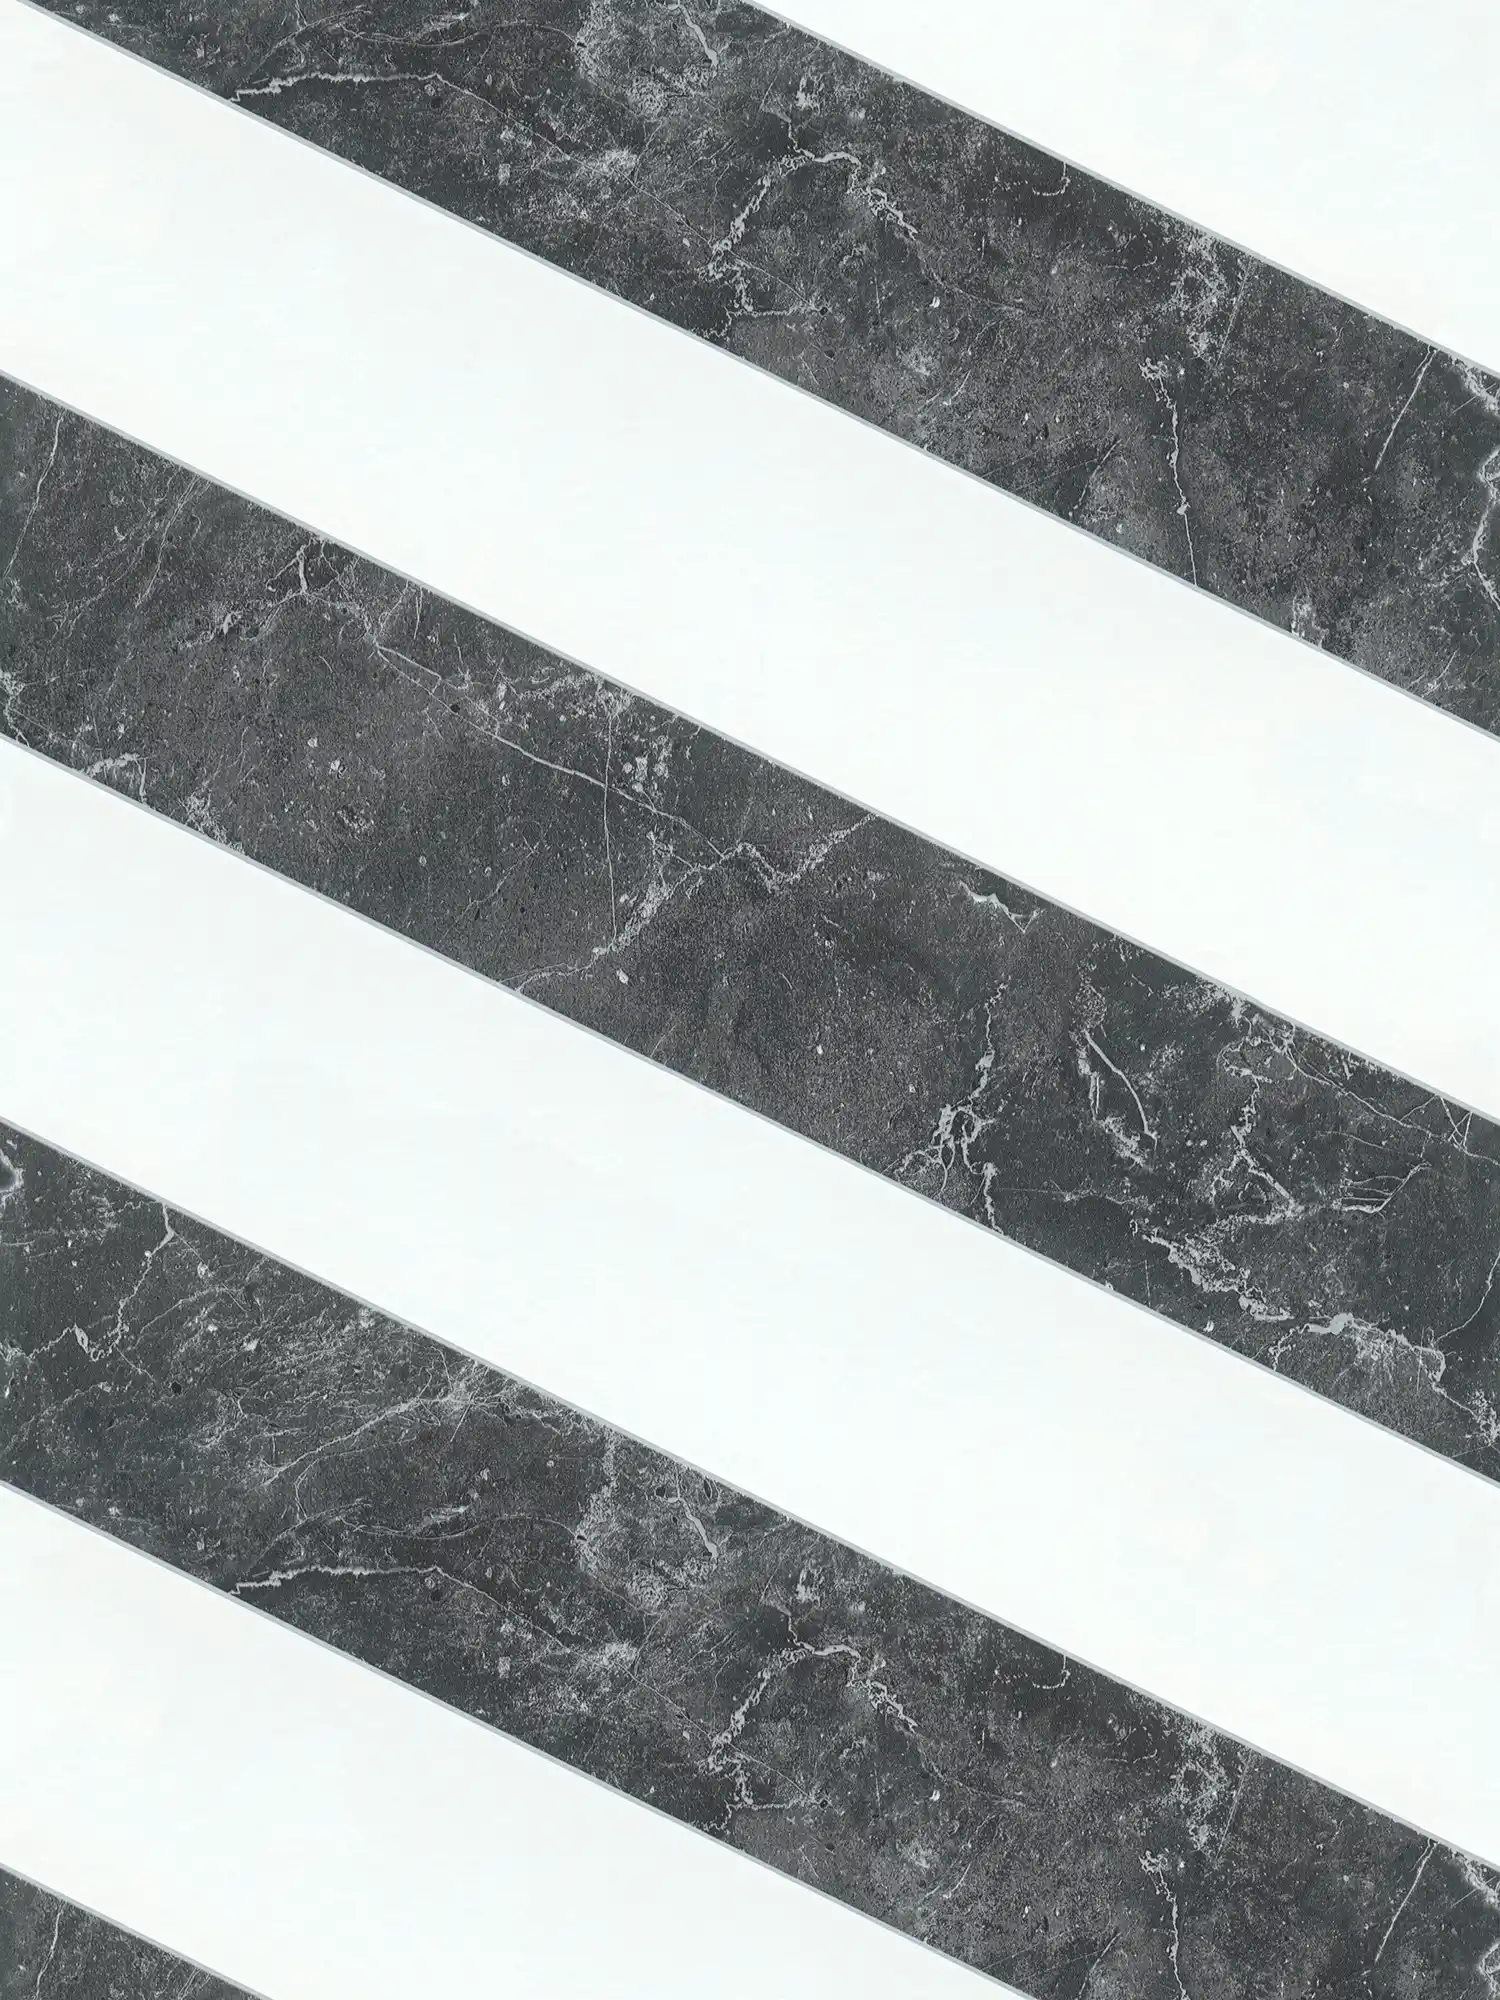         Streifen Tapete Marmoroptik Querstreifen Schwarz-Weiß Design
    